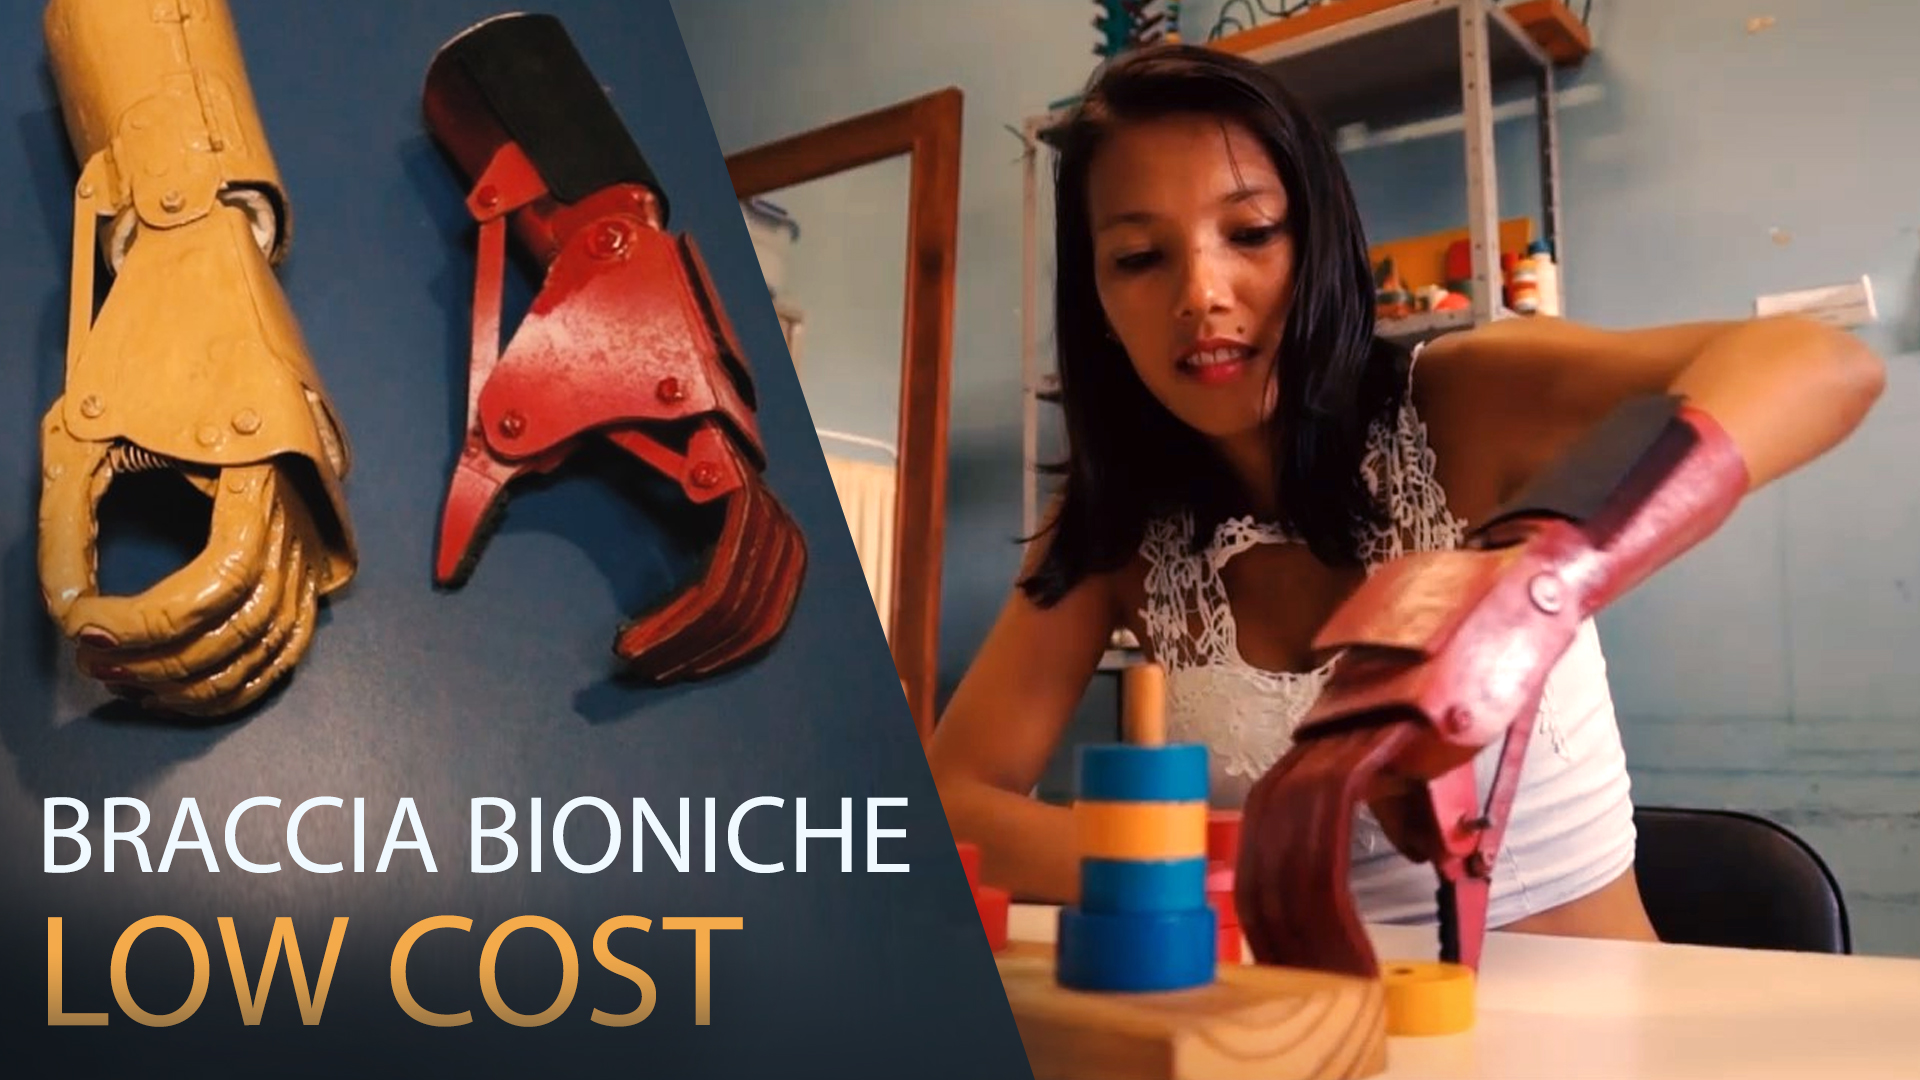 Il braccio bionico ora e' low cost